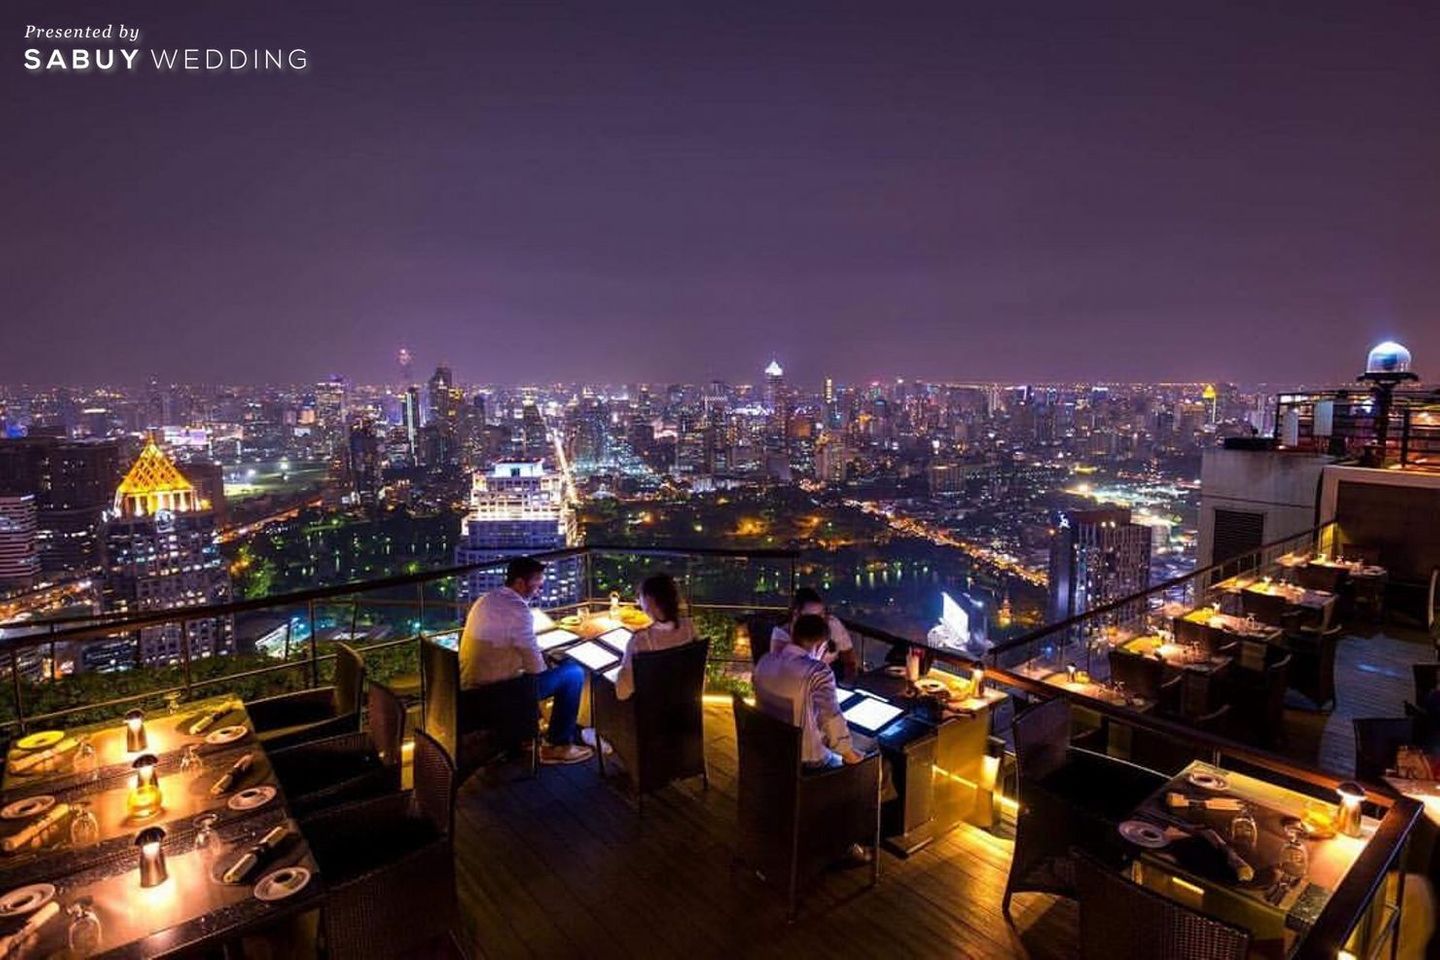 สถานที่แต่งงาน,สถานที่จัดงานแต่งงาน,งานแต่ง outdoor,สถานที่แต่งงานดาดฟ้า,โรงแรม เรียบหรูดูดีหรือปาร์ตี้สุดแซ่บ จัดงานแต่งงานให้สวยเริ่ดที่ Banyan Tree Bangkok